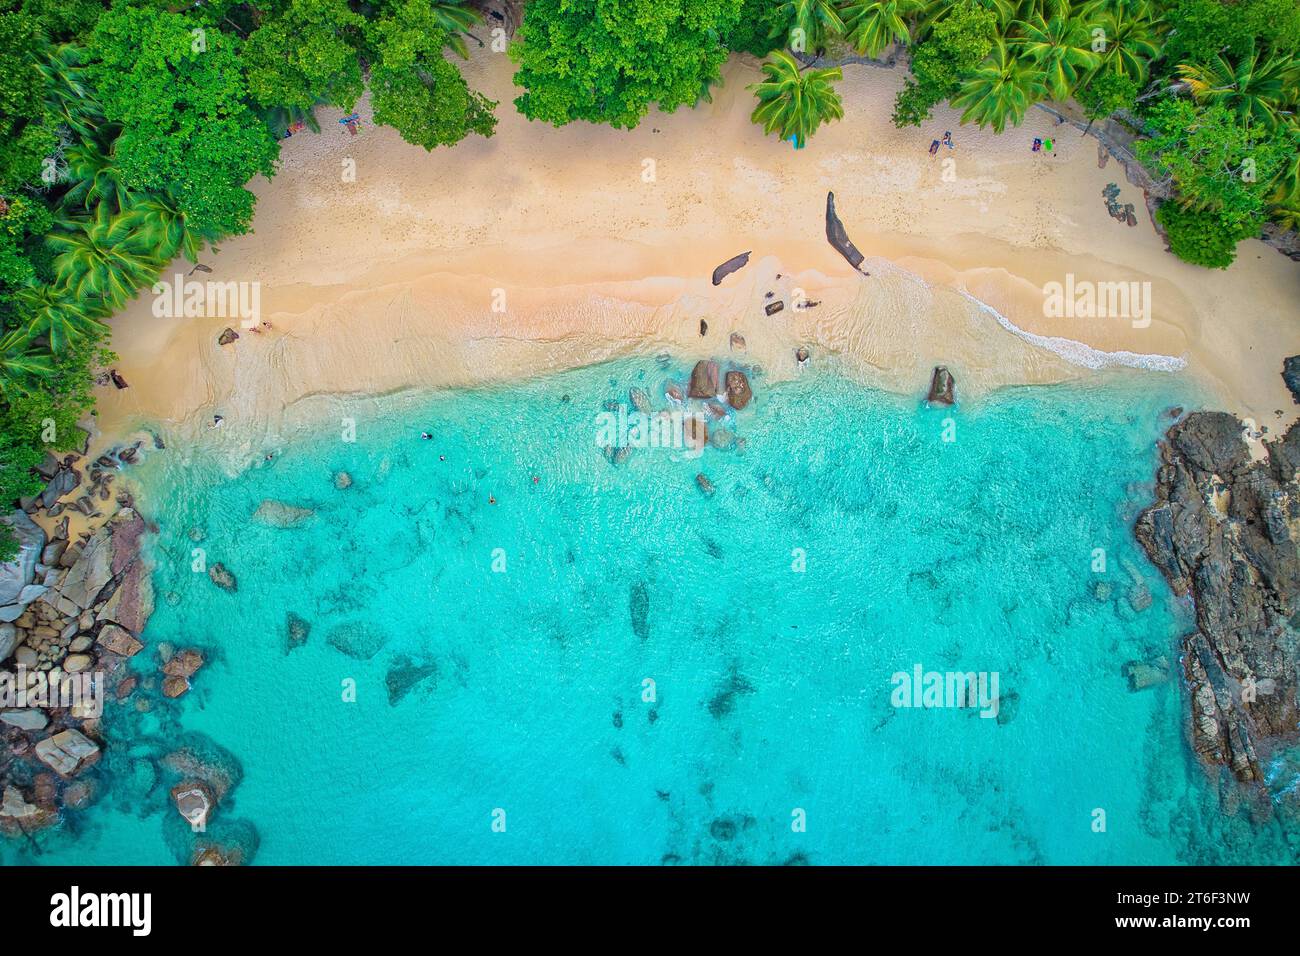 Fotografia con droni a volo d'uccello di turisti in spiaggia, nuoto e snorkeling, rocce di granito, acque turchesi e trasparenti, vicino alla riva, Mahe Foto Stock